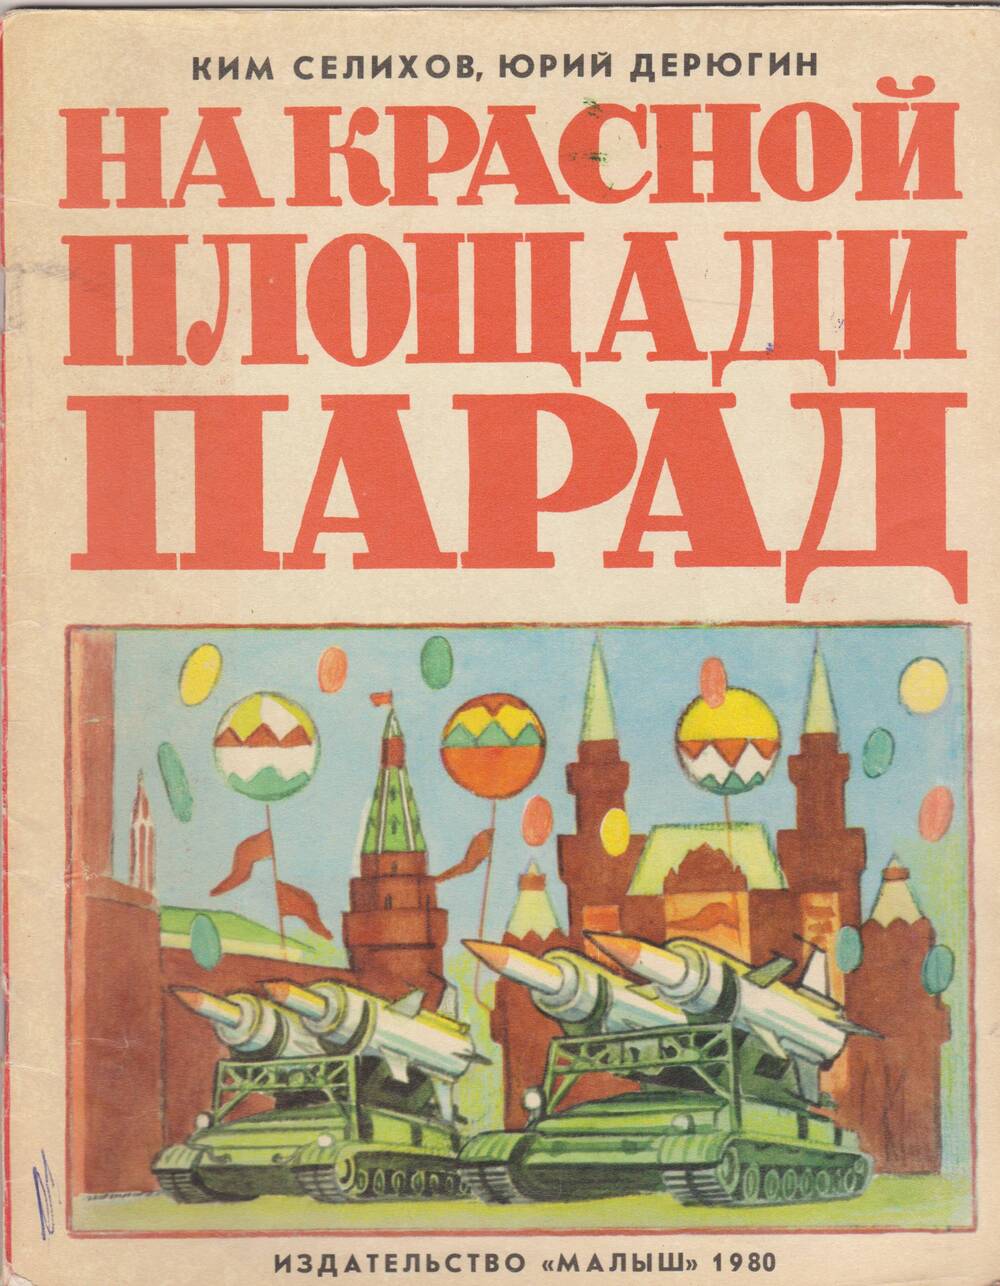 Книга «На Красной площади парад». Авторы К.Селихов, Ю.Дерюгин